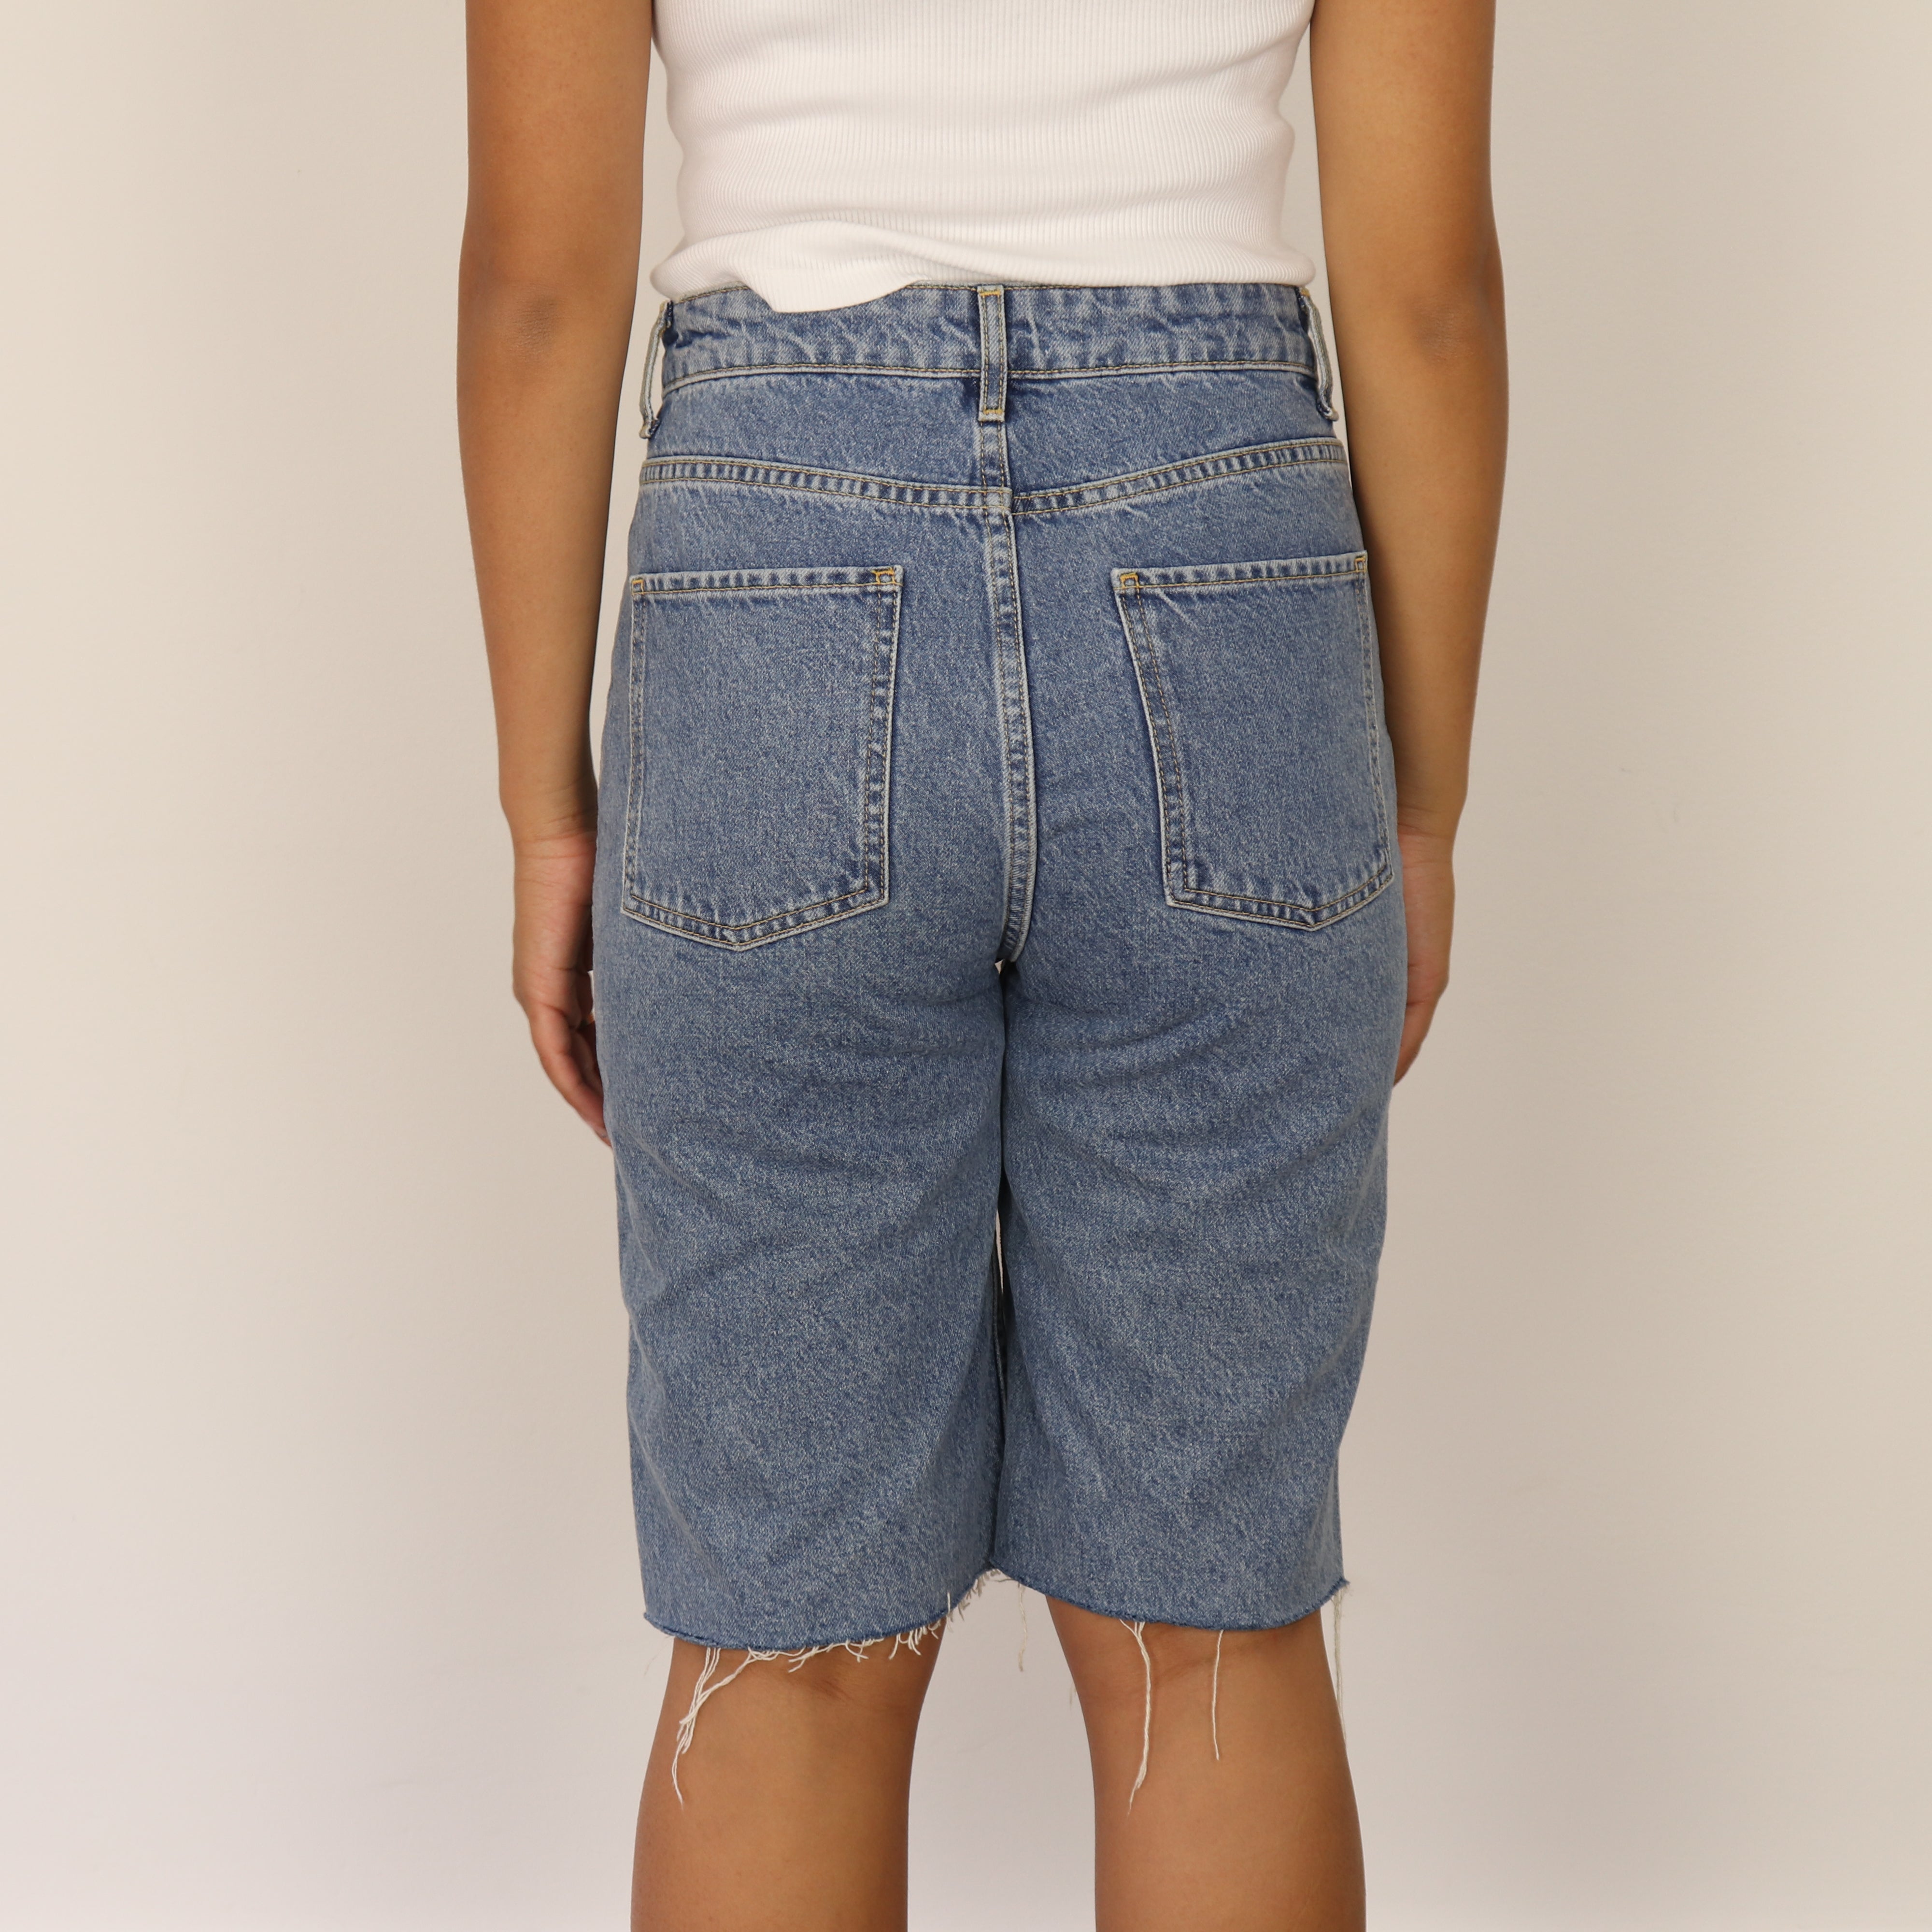 Shorts, UK Size 8